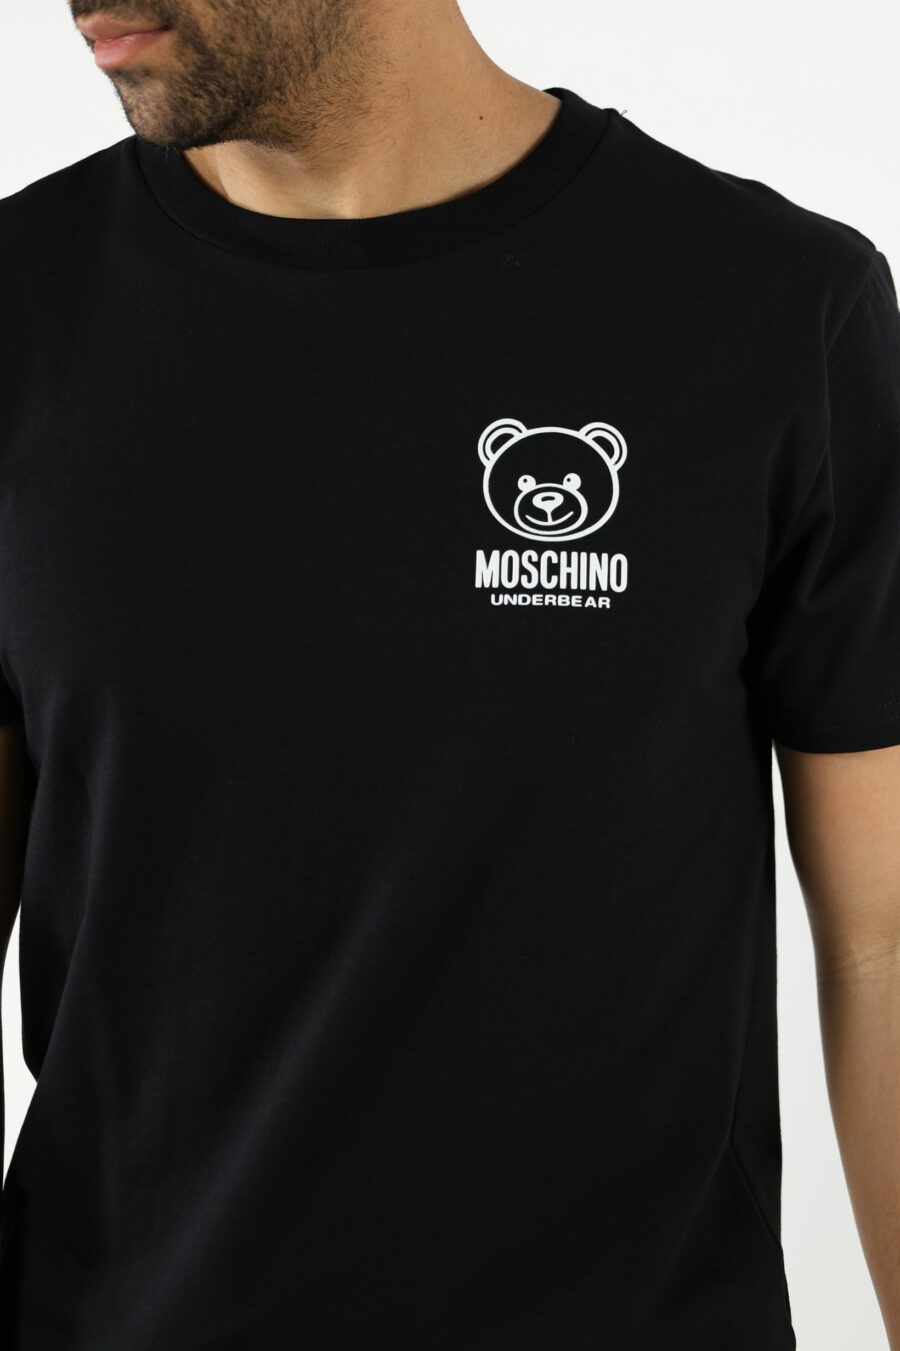 T-shirt preta com mini-logotipo do urso "underbear" em borracha branca - 111015